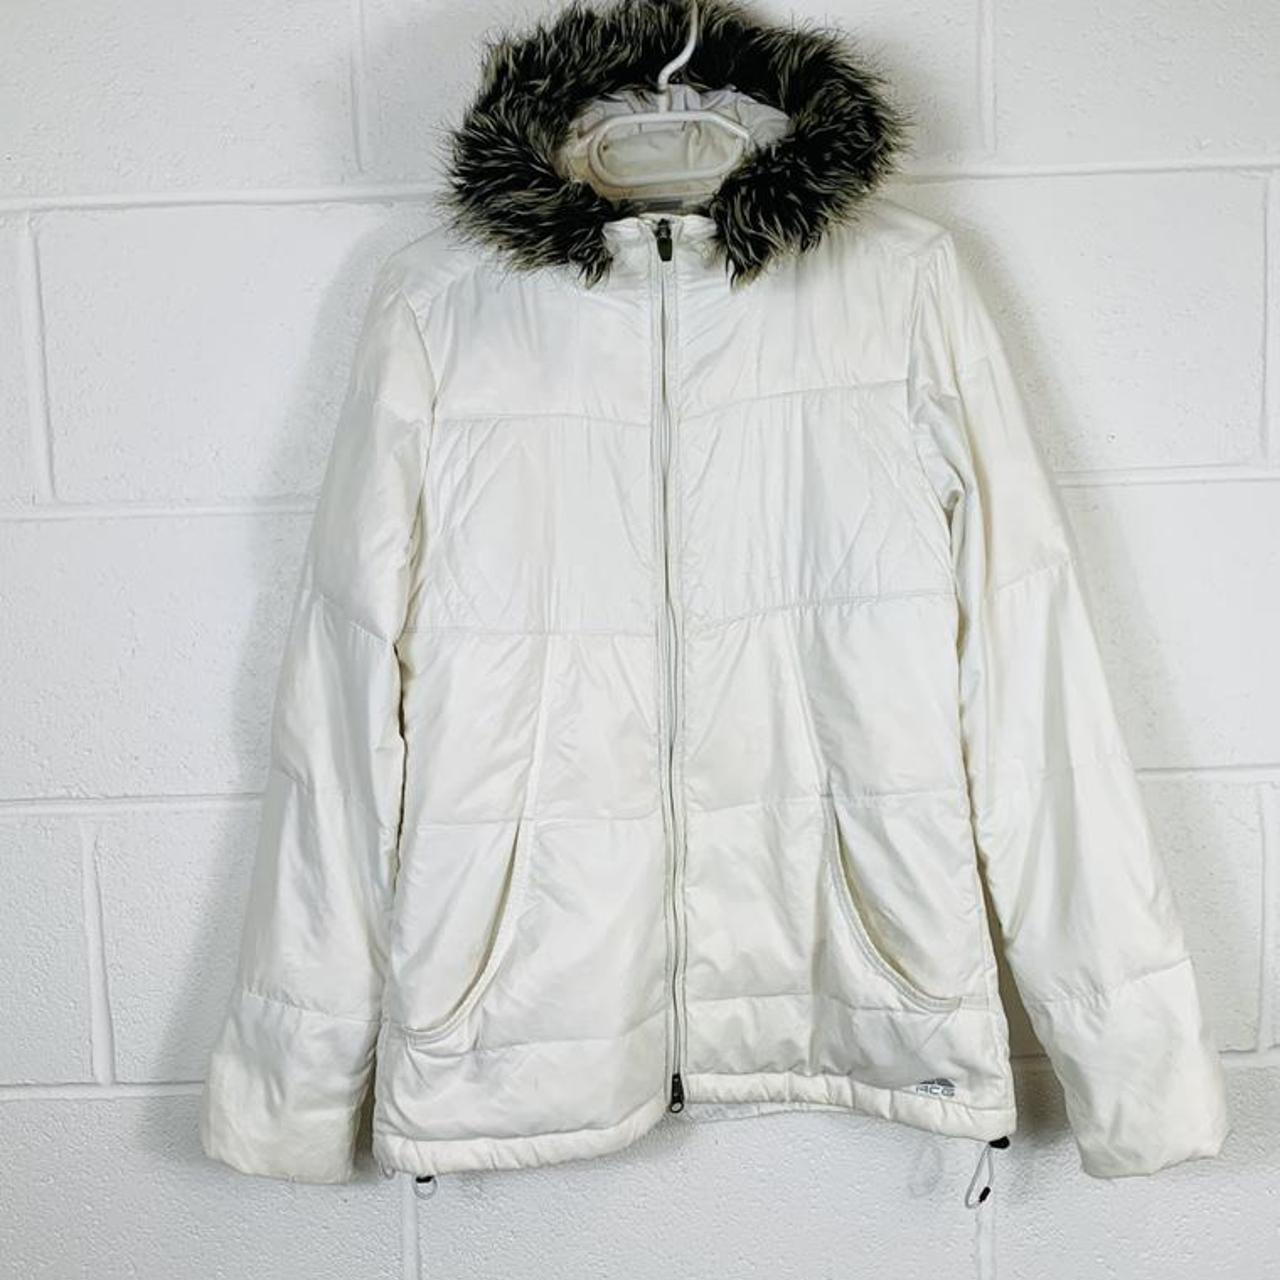 Vintage Nike ACG Puffer Jacket Waterproof Coat;... - Depop